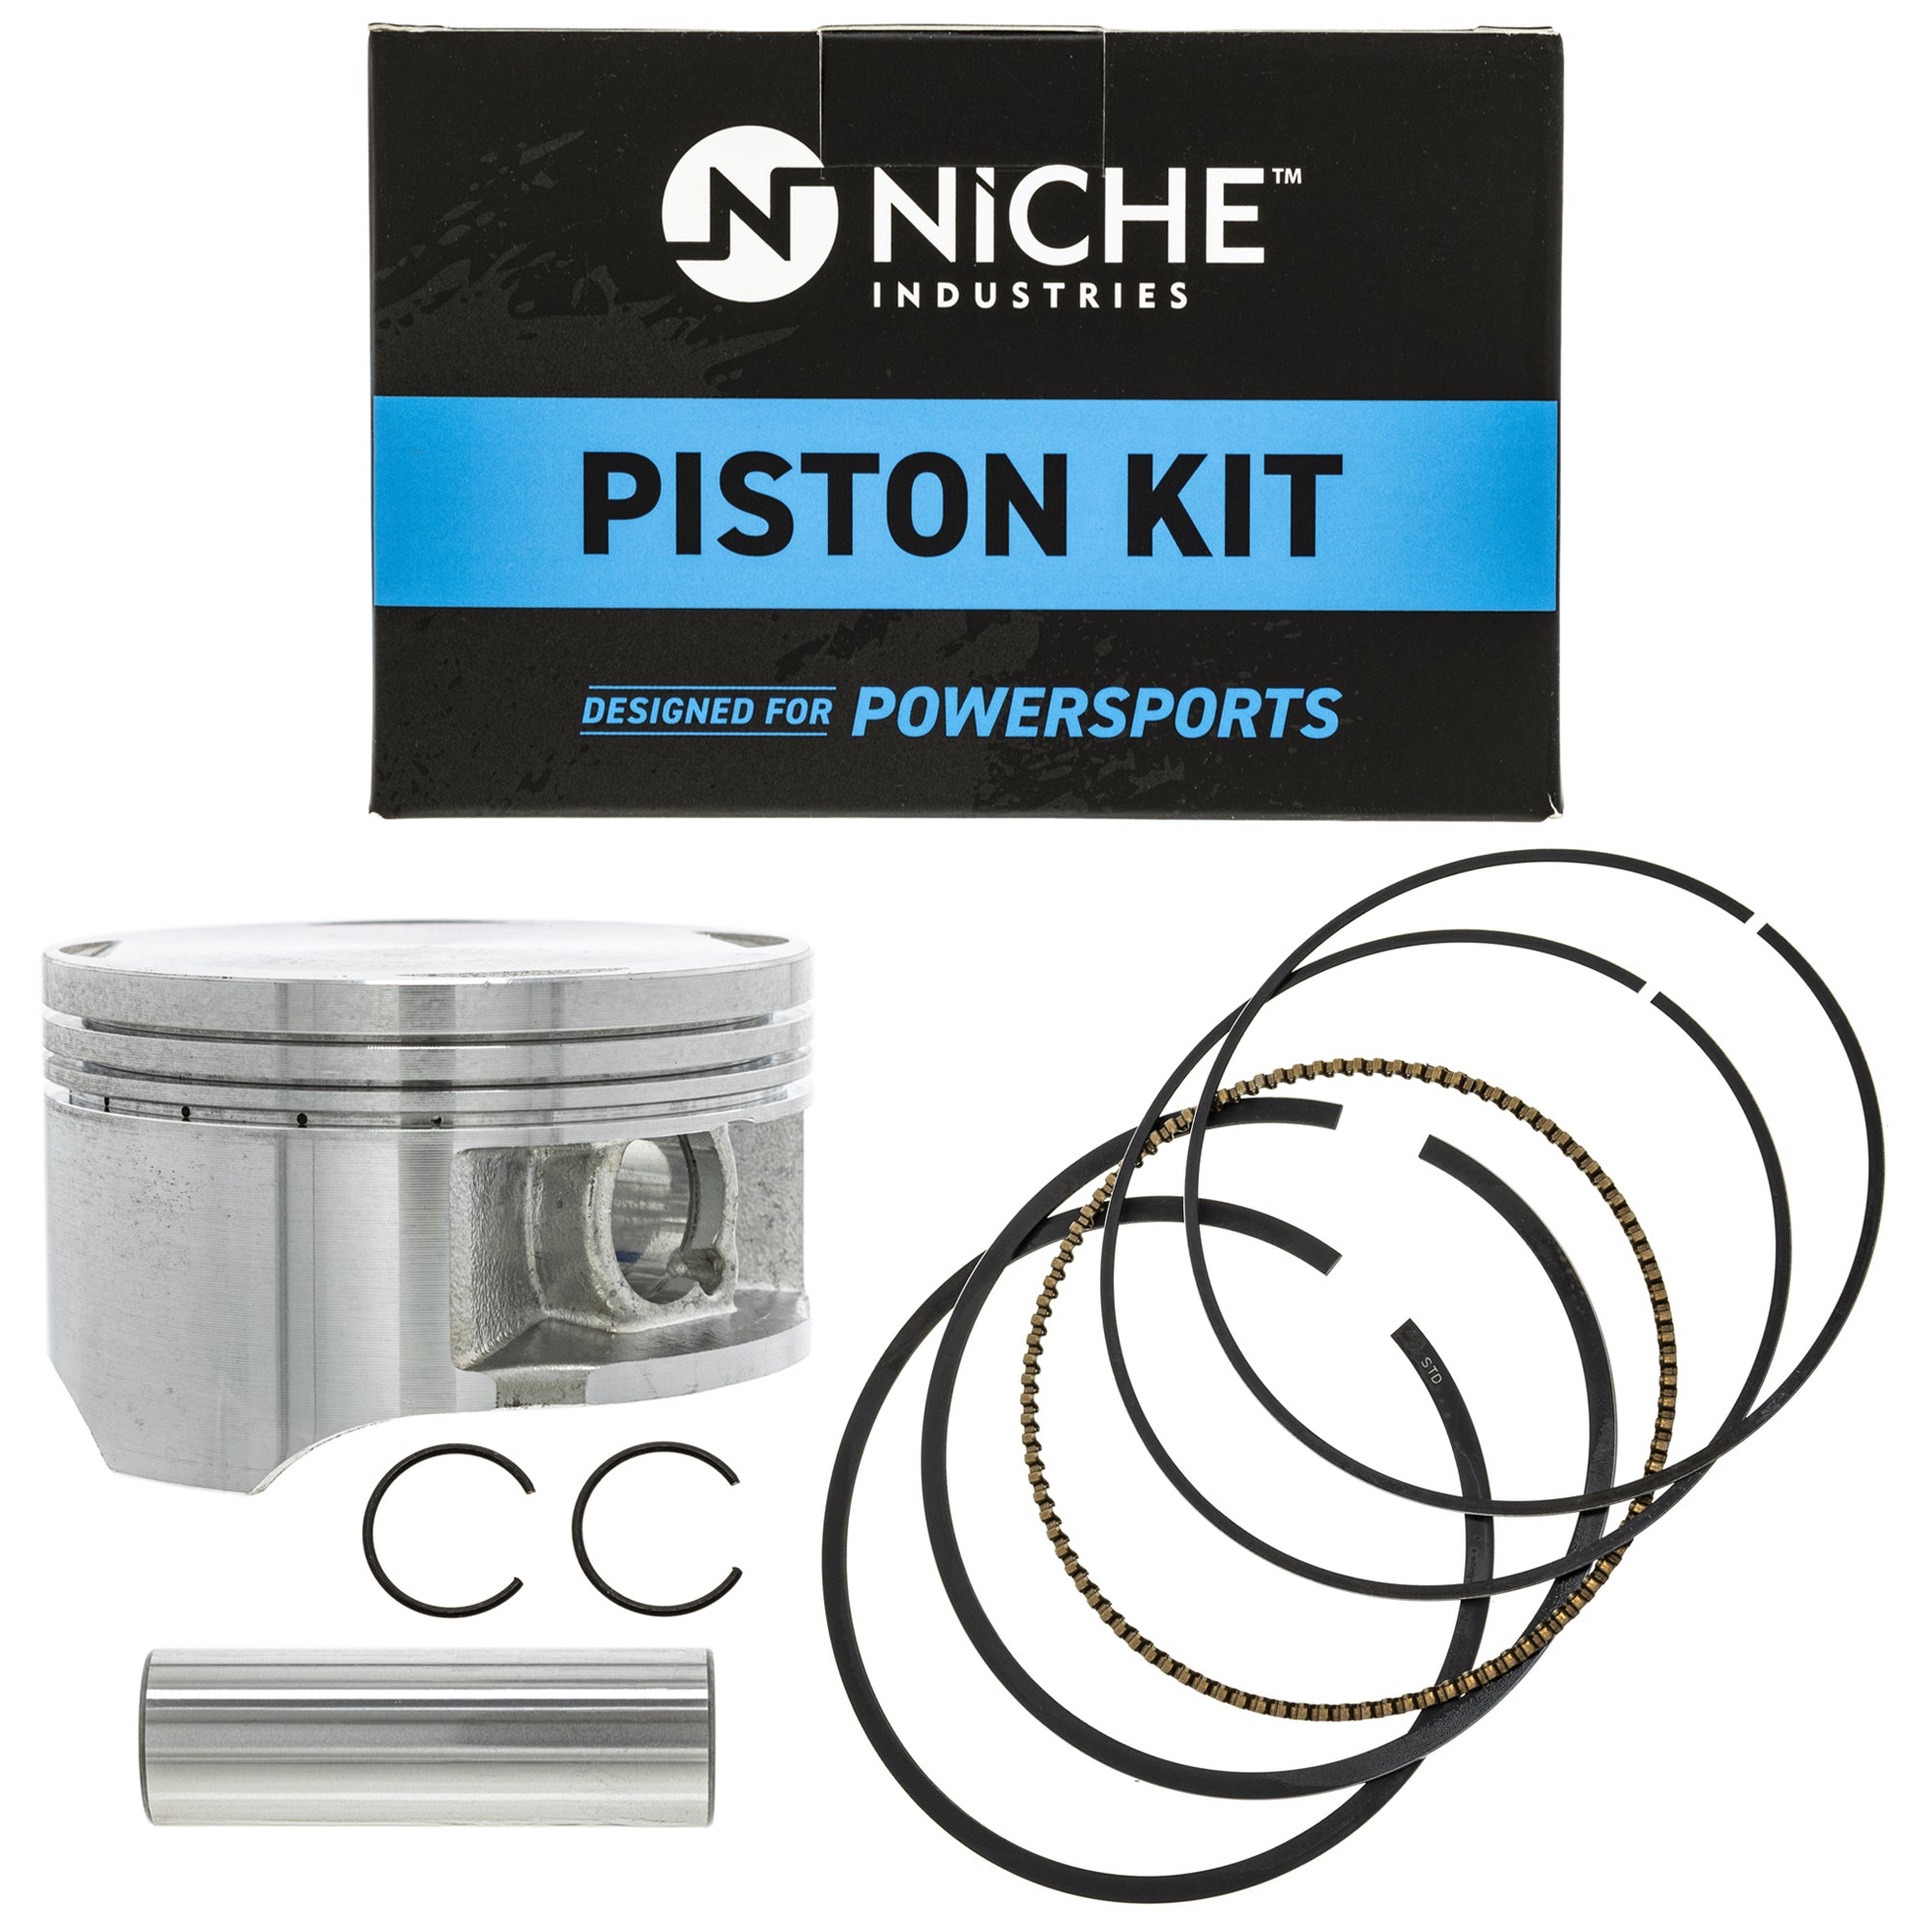 NICHE MK1000990 Piston Kit